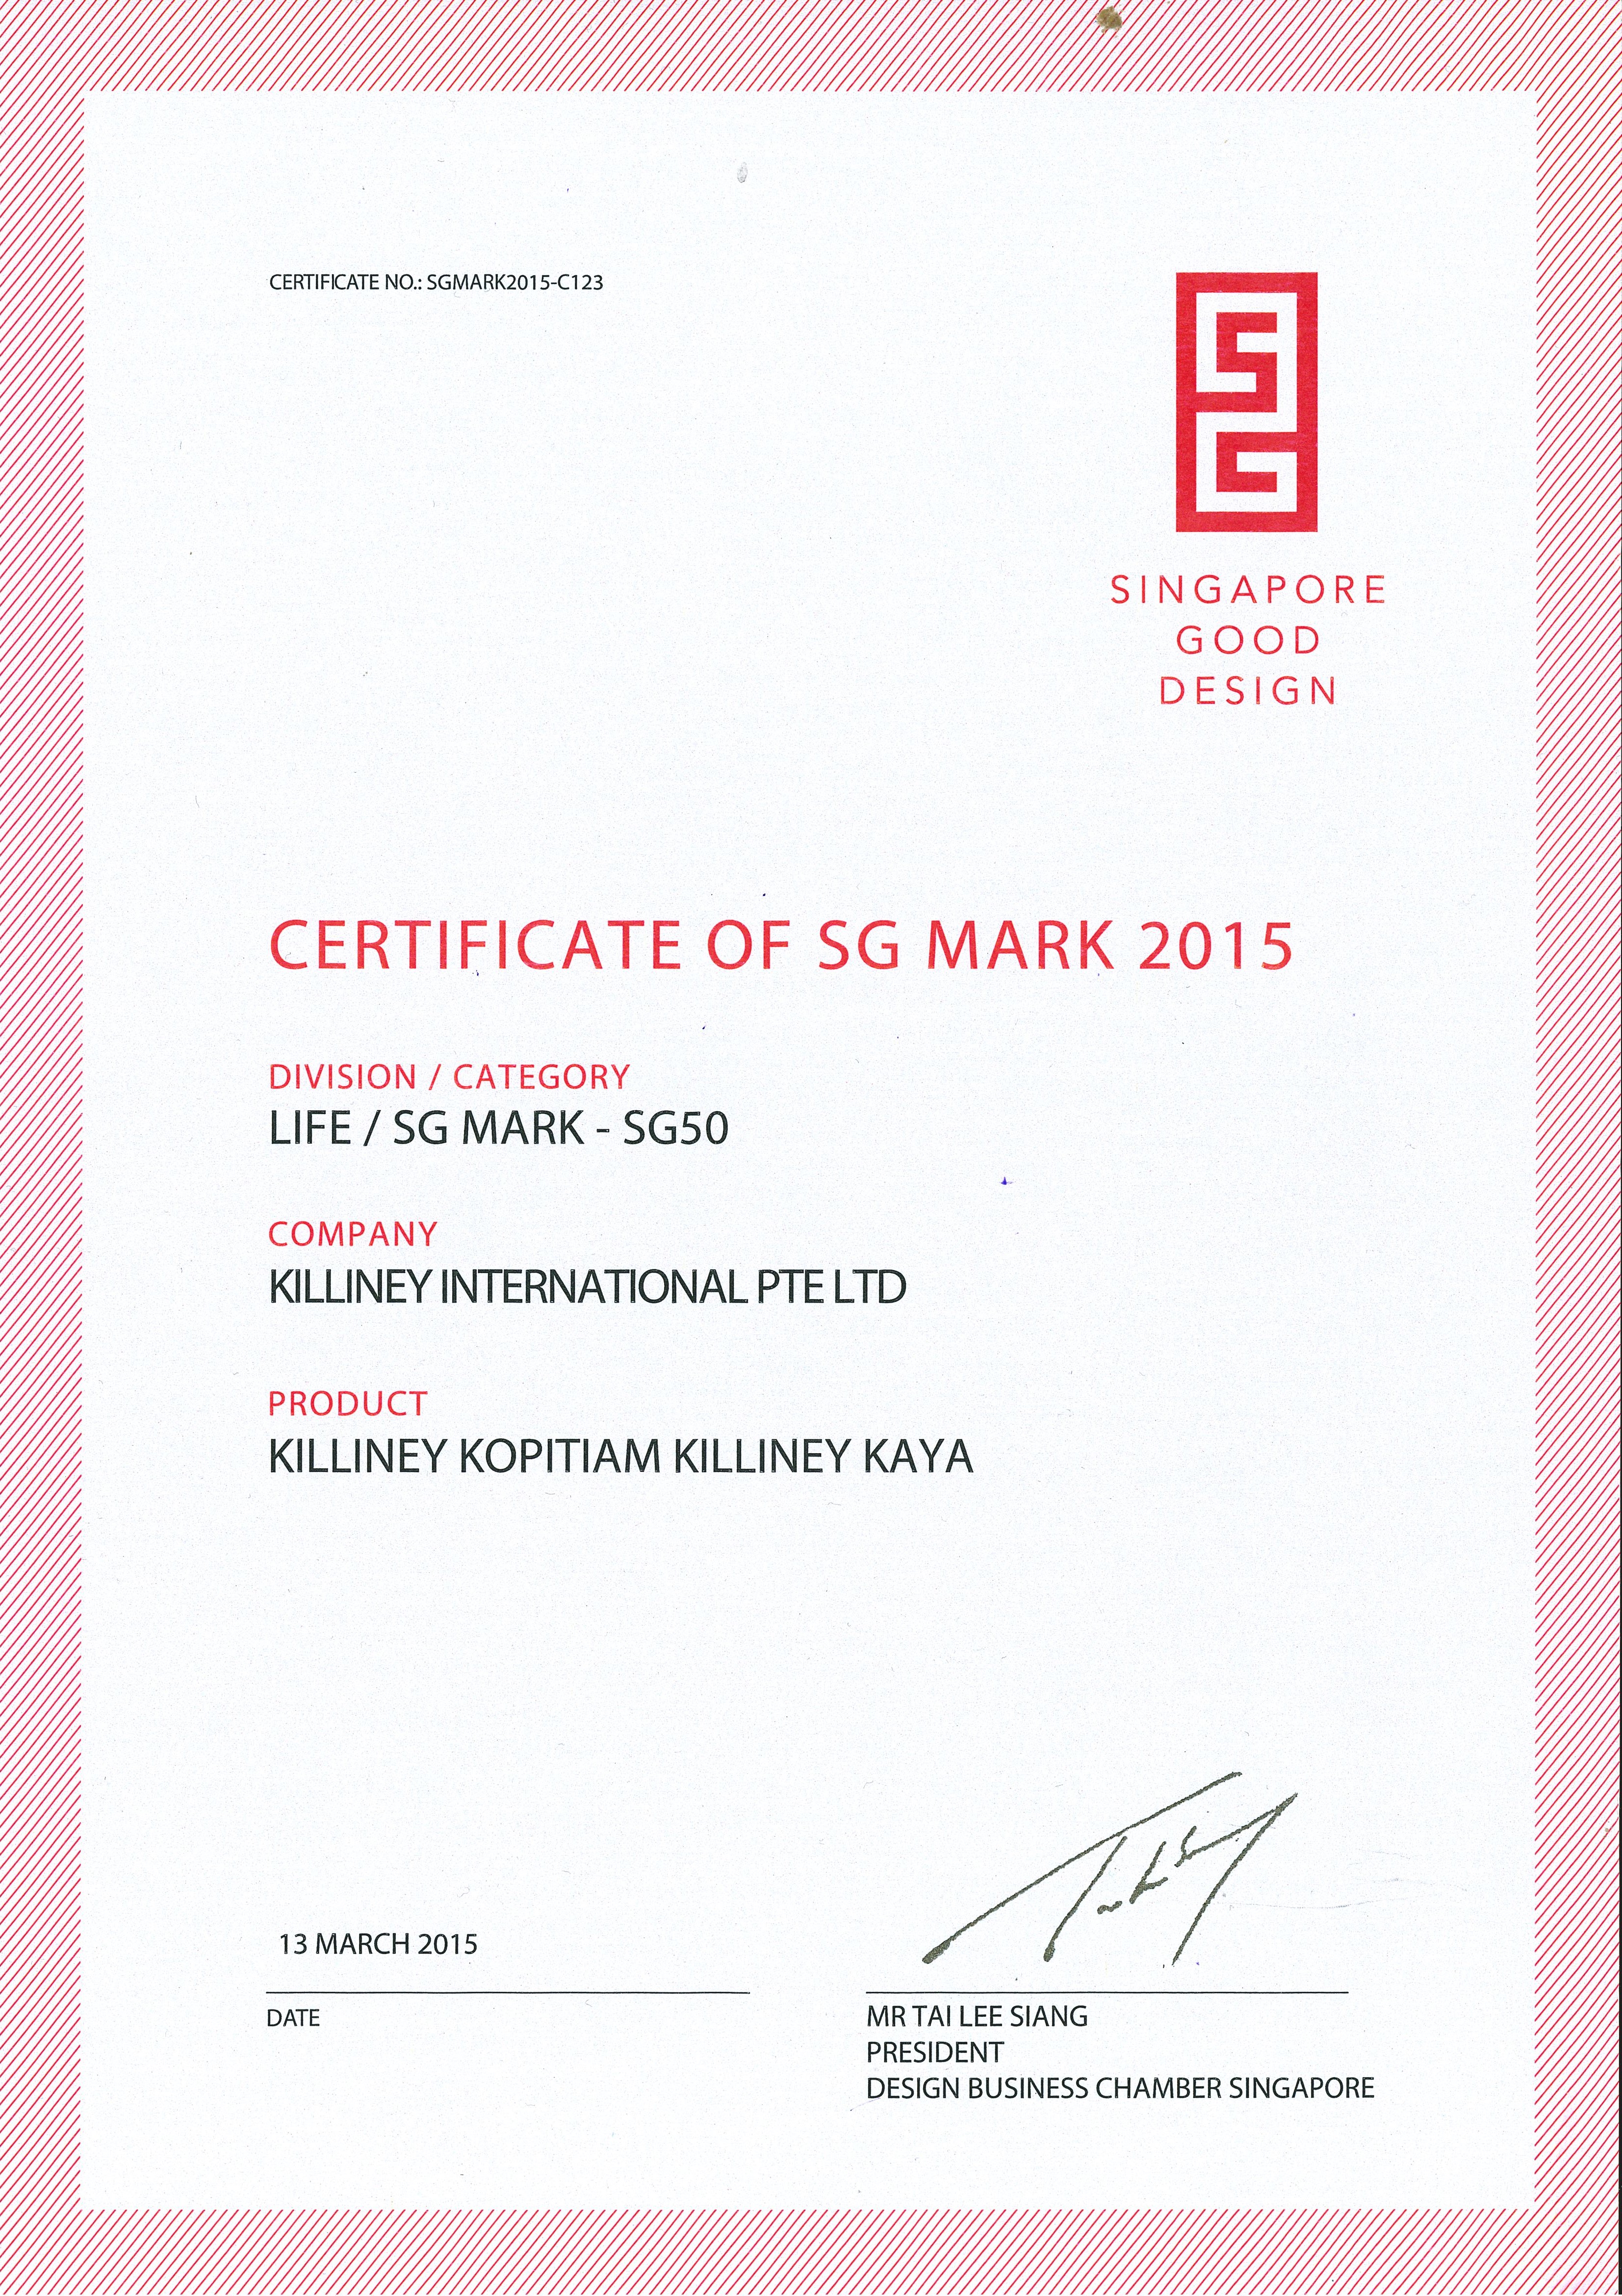 Certificate of SG Mark 2015